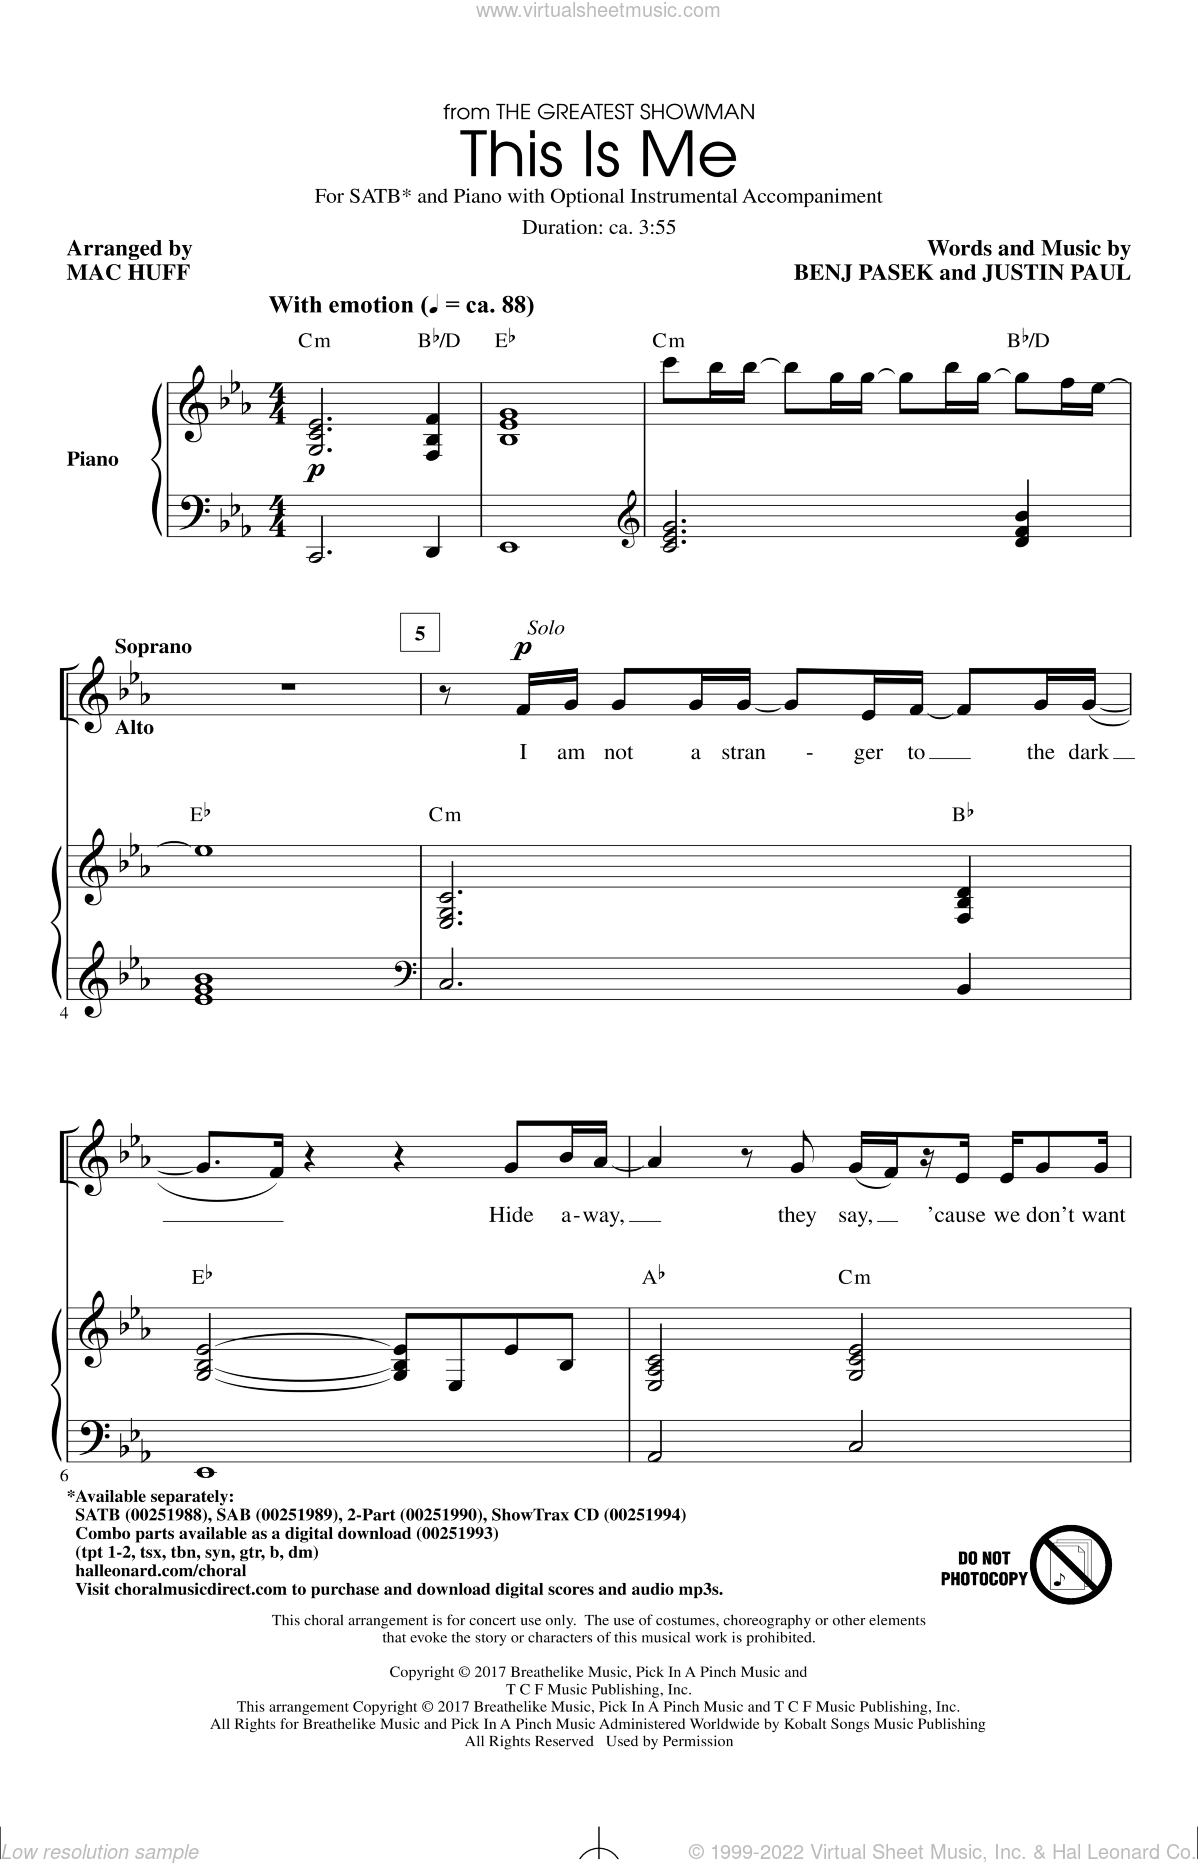 free choral sheet music download pdf